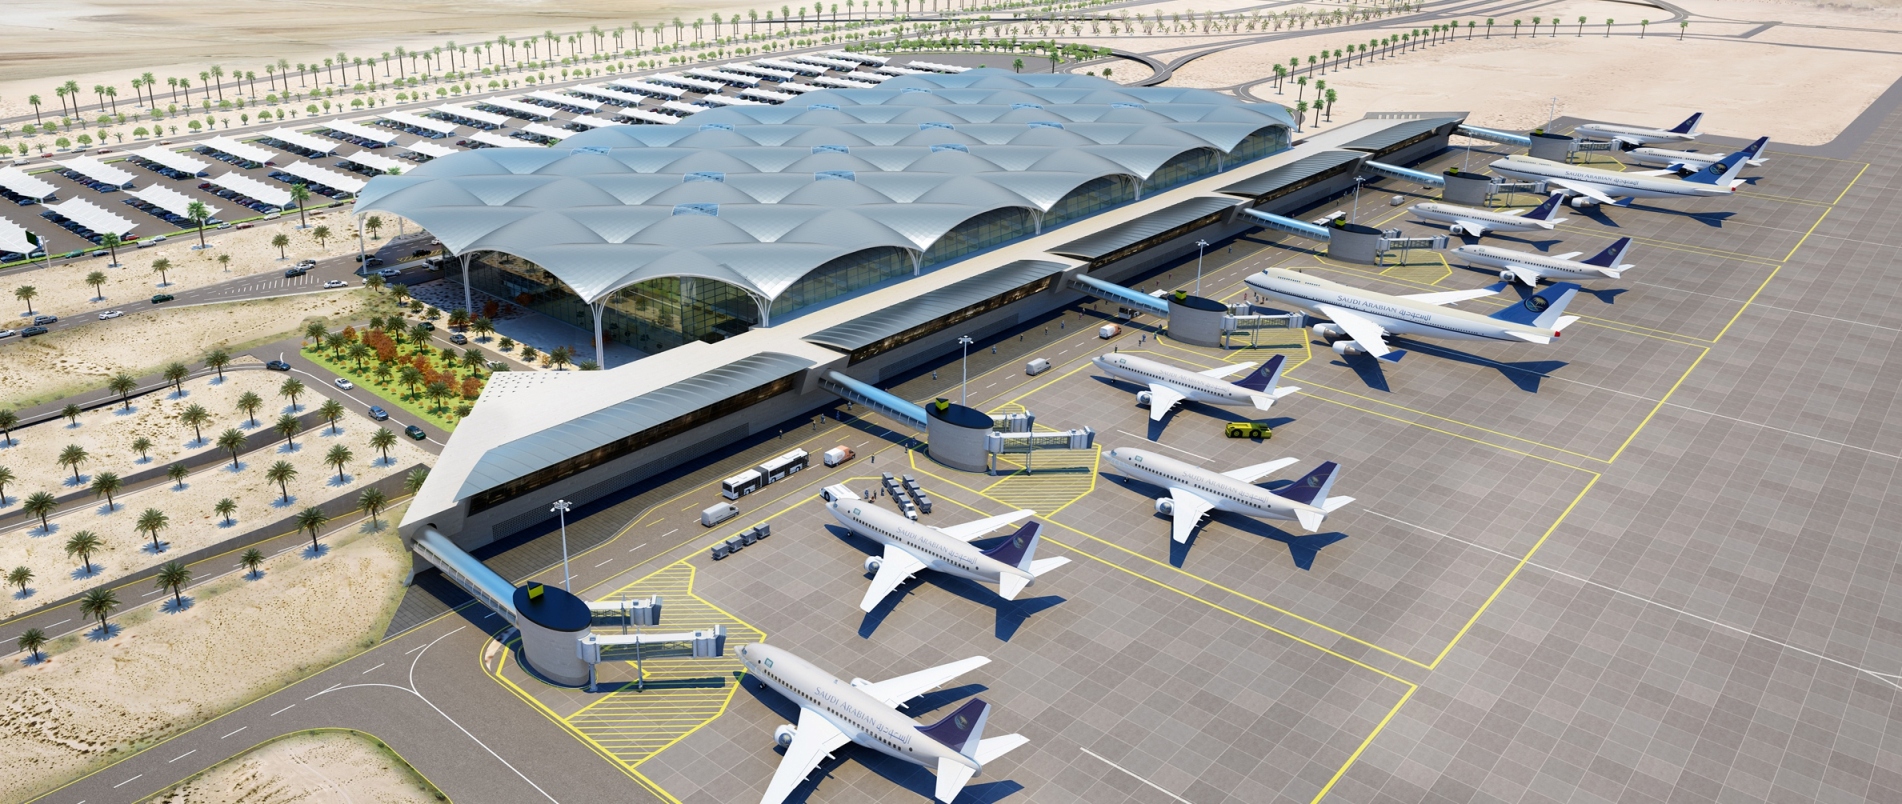  للمسافرين عبر المطارات السعودية .. تقنية جديدة لإنهاء الإجراءات في دقائق